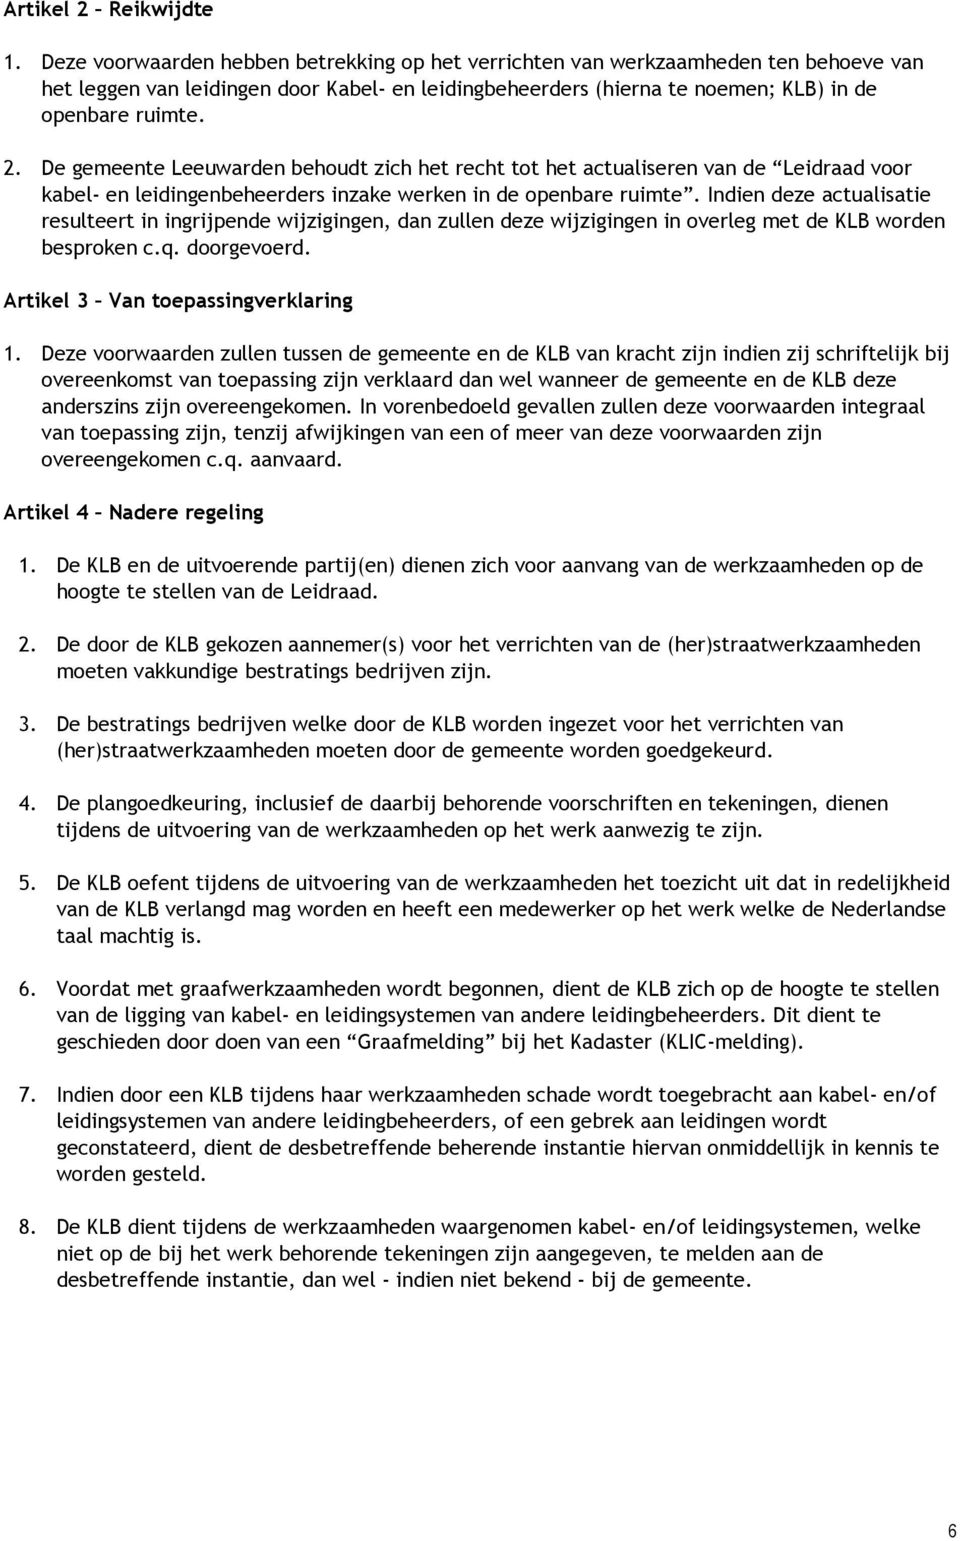 De gemeente Leeuwarden behoudt zich het recht tot het actualiseren van de Leidraad voor kabel- en leidingenbeheerders inzake werken in de openbare ruimte.